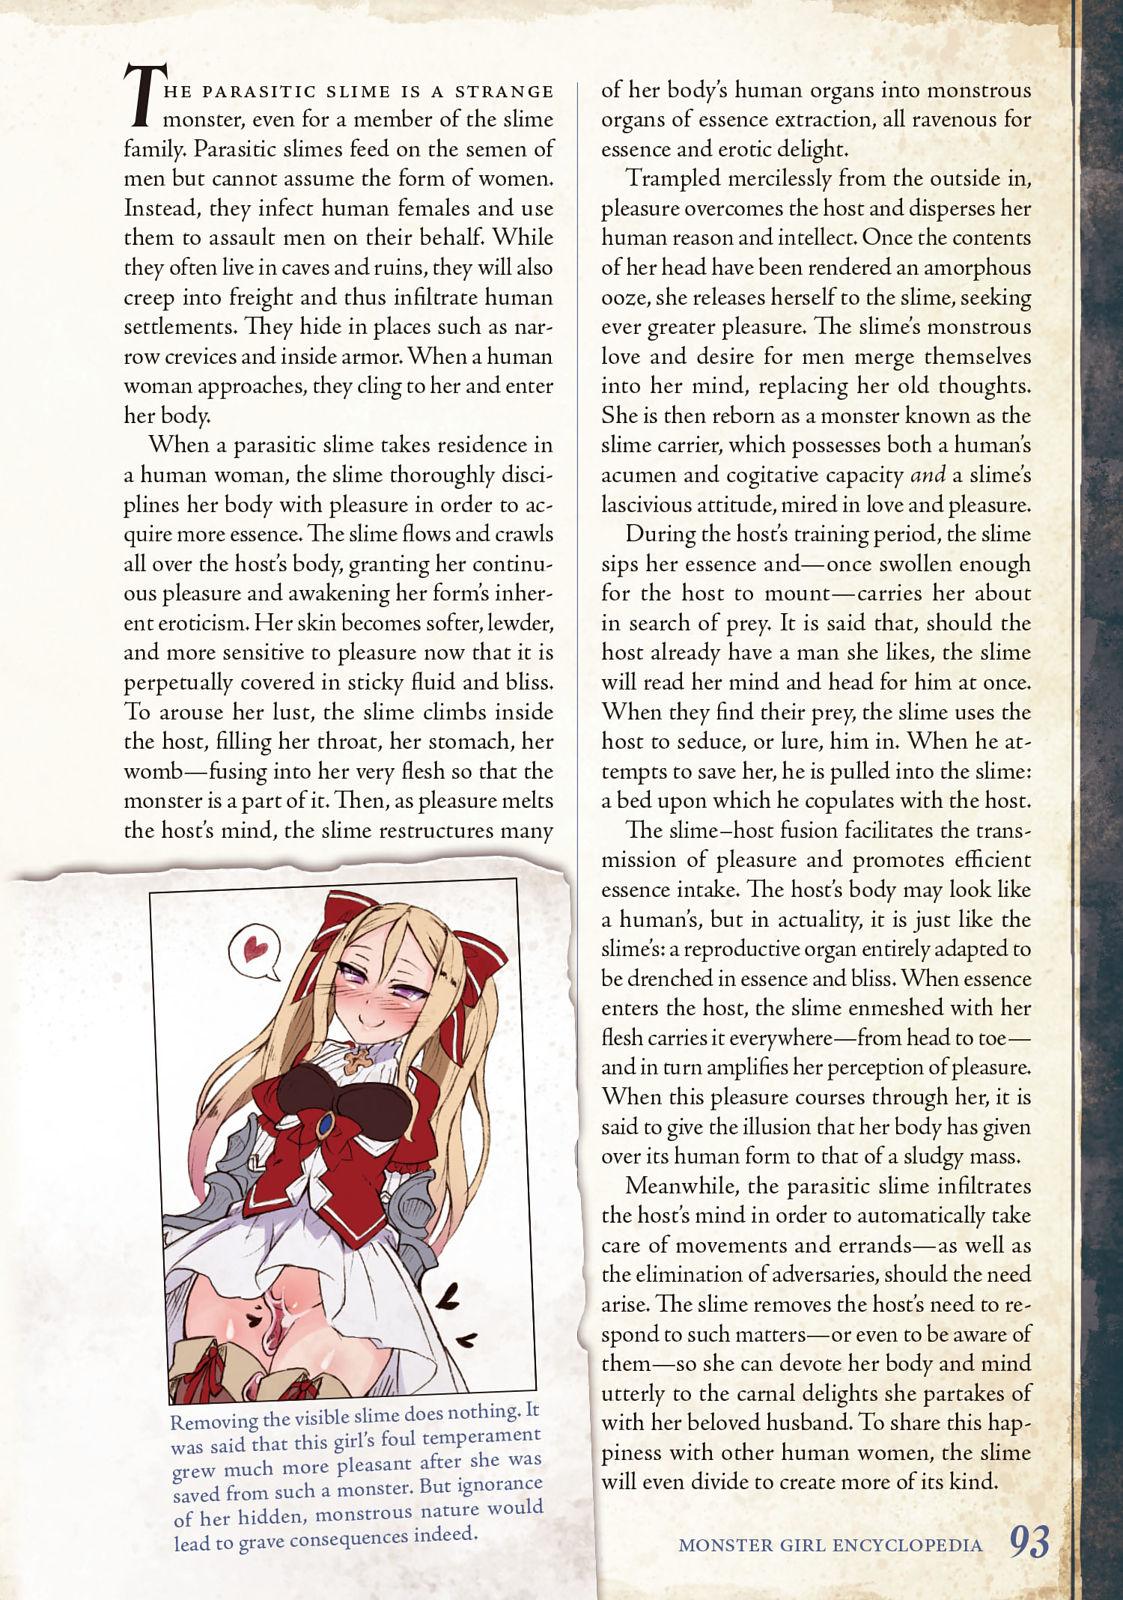 Monster Girl Encyclopedia Vol. 2 93